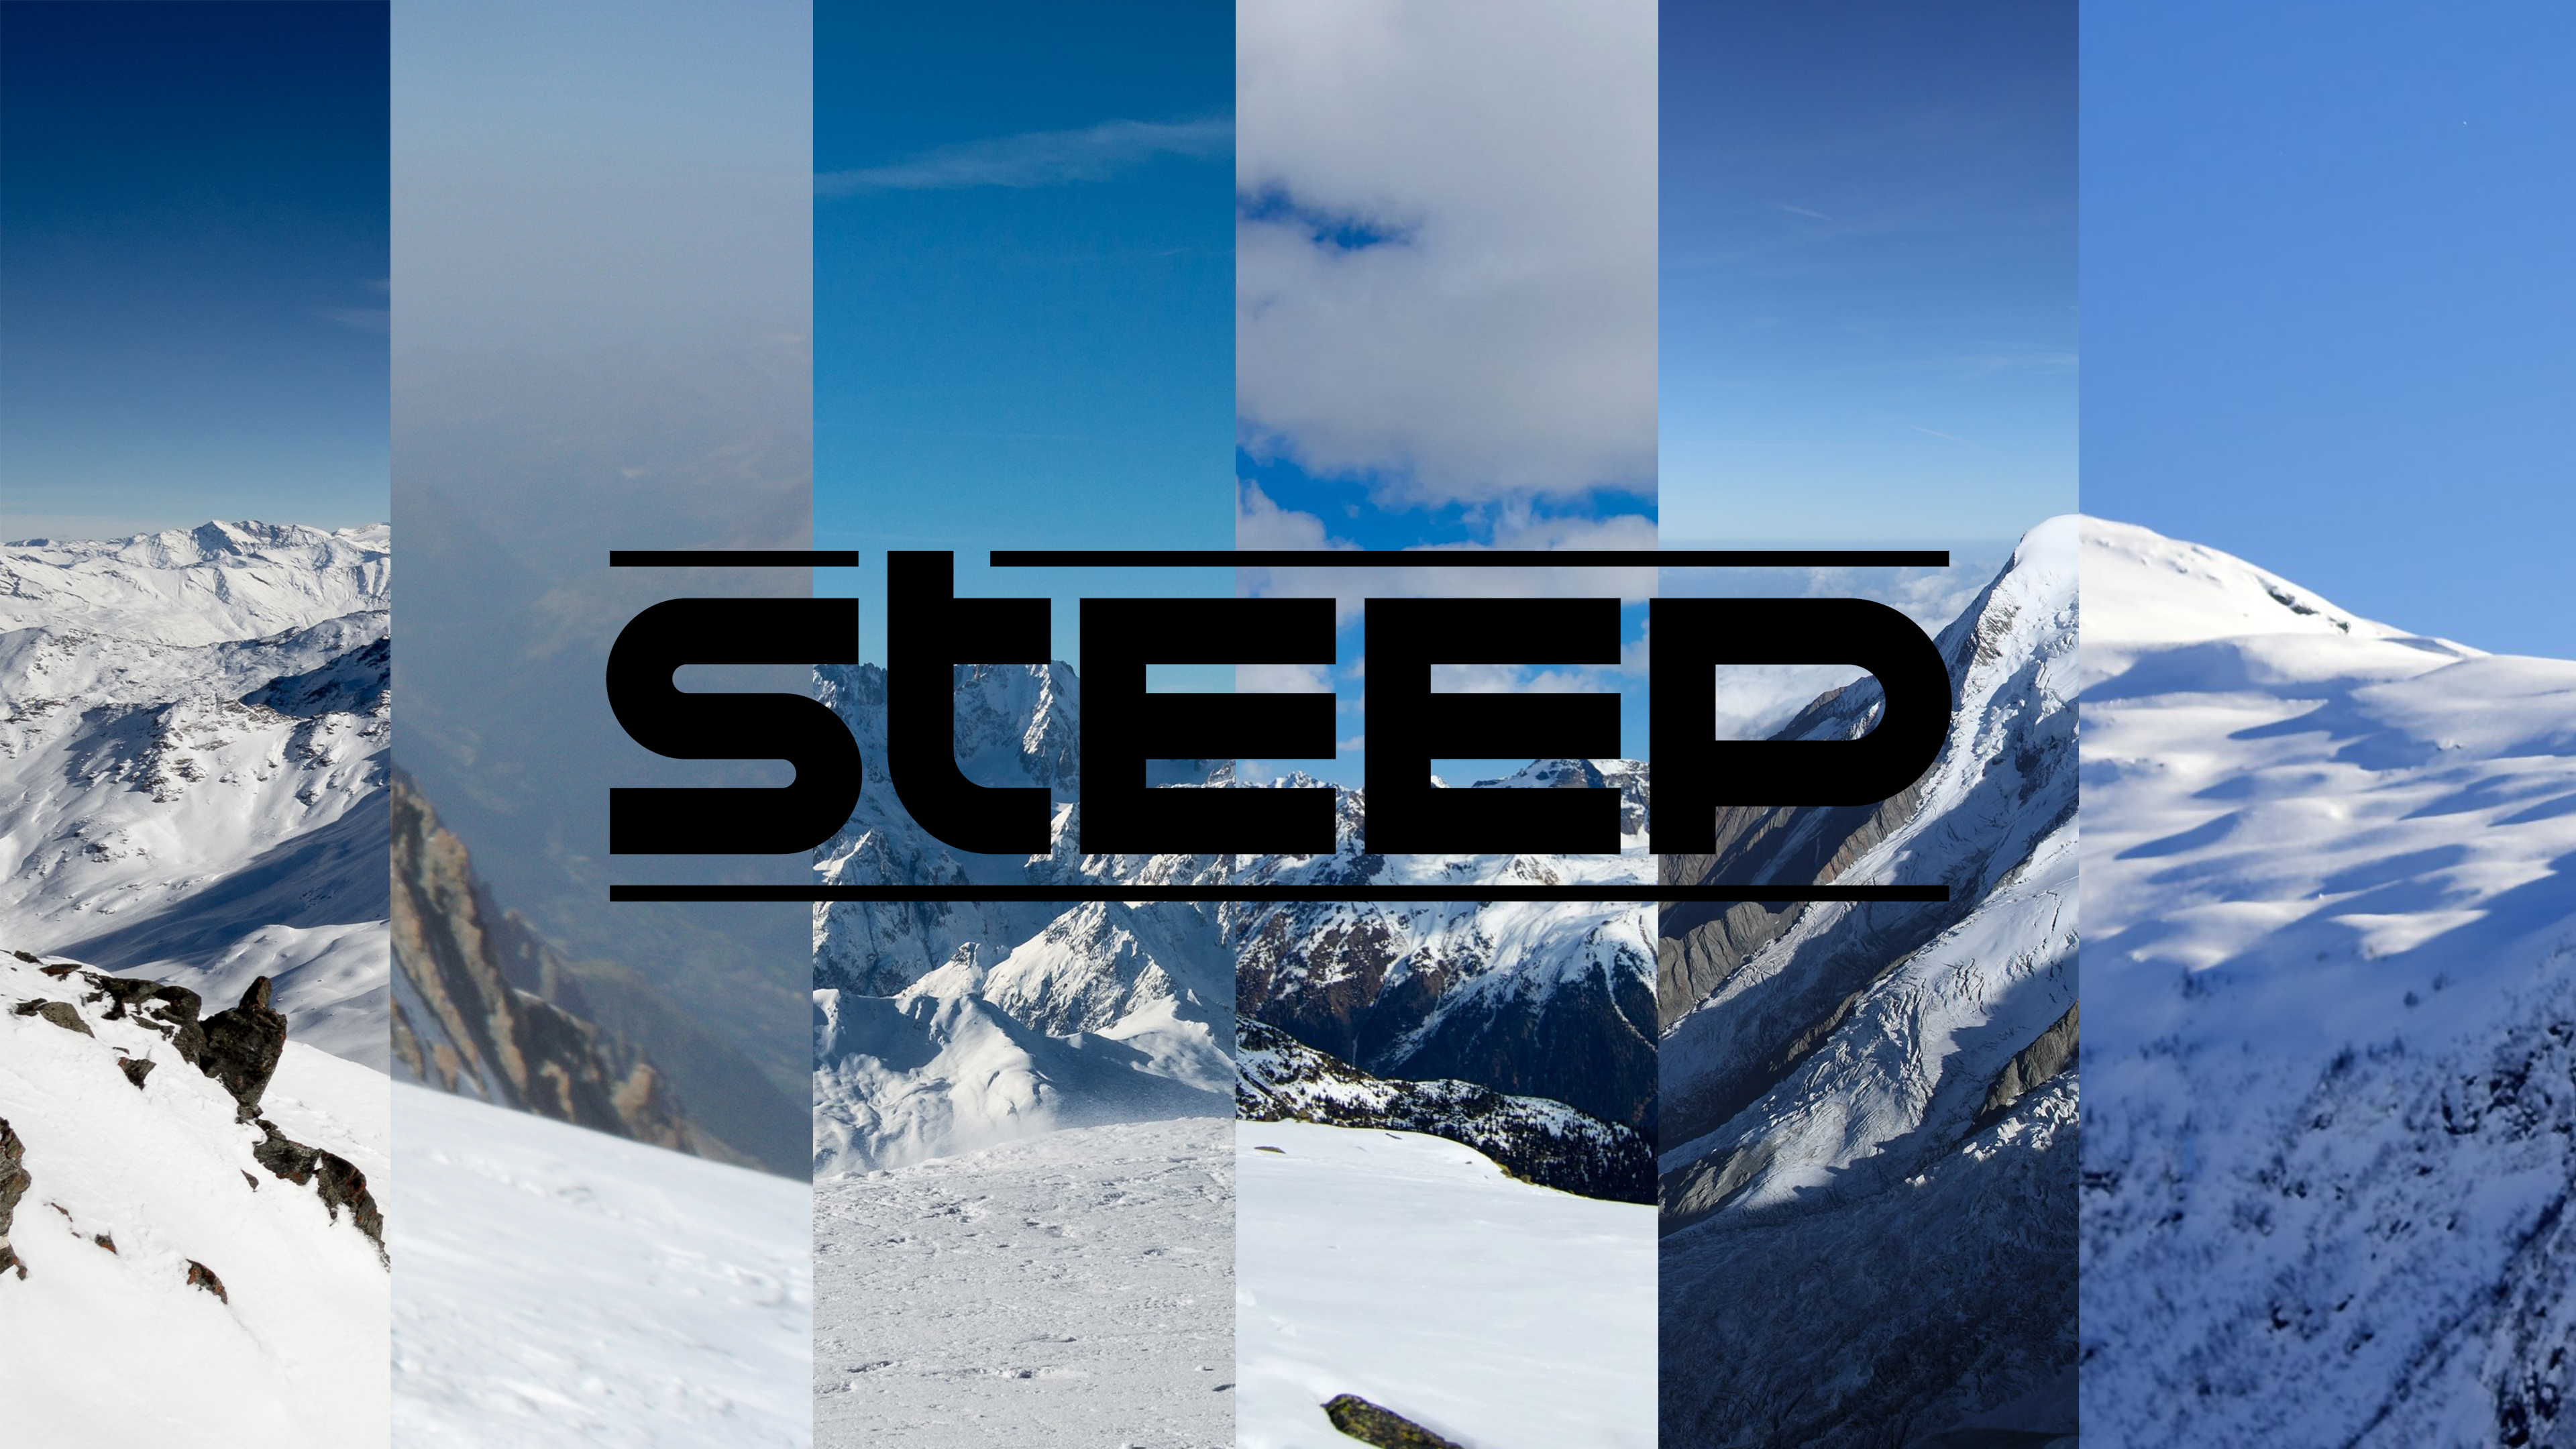 steep wallpaper,snow,mountainous landforms,winter,mountain,sky